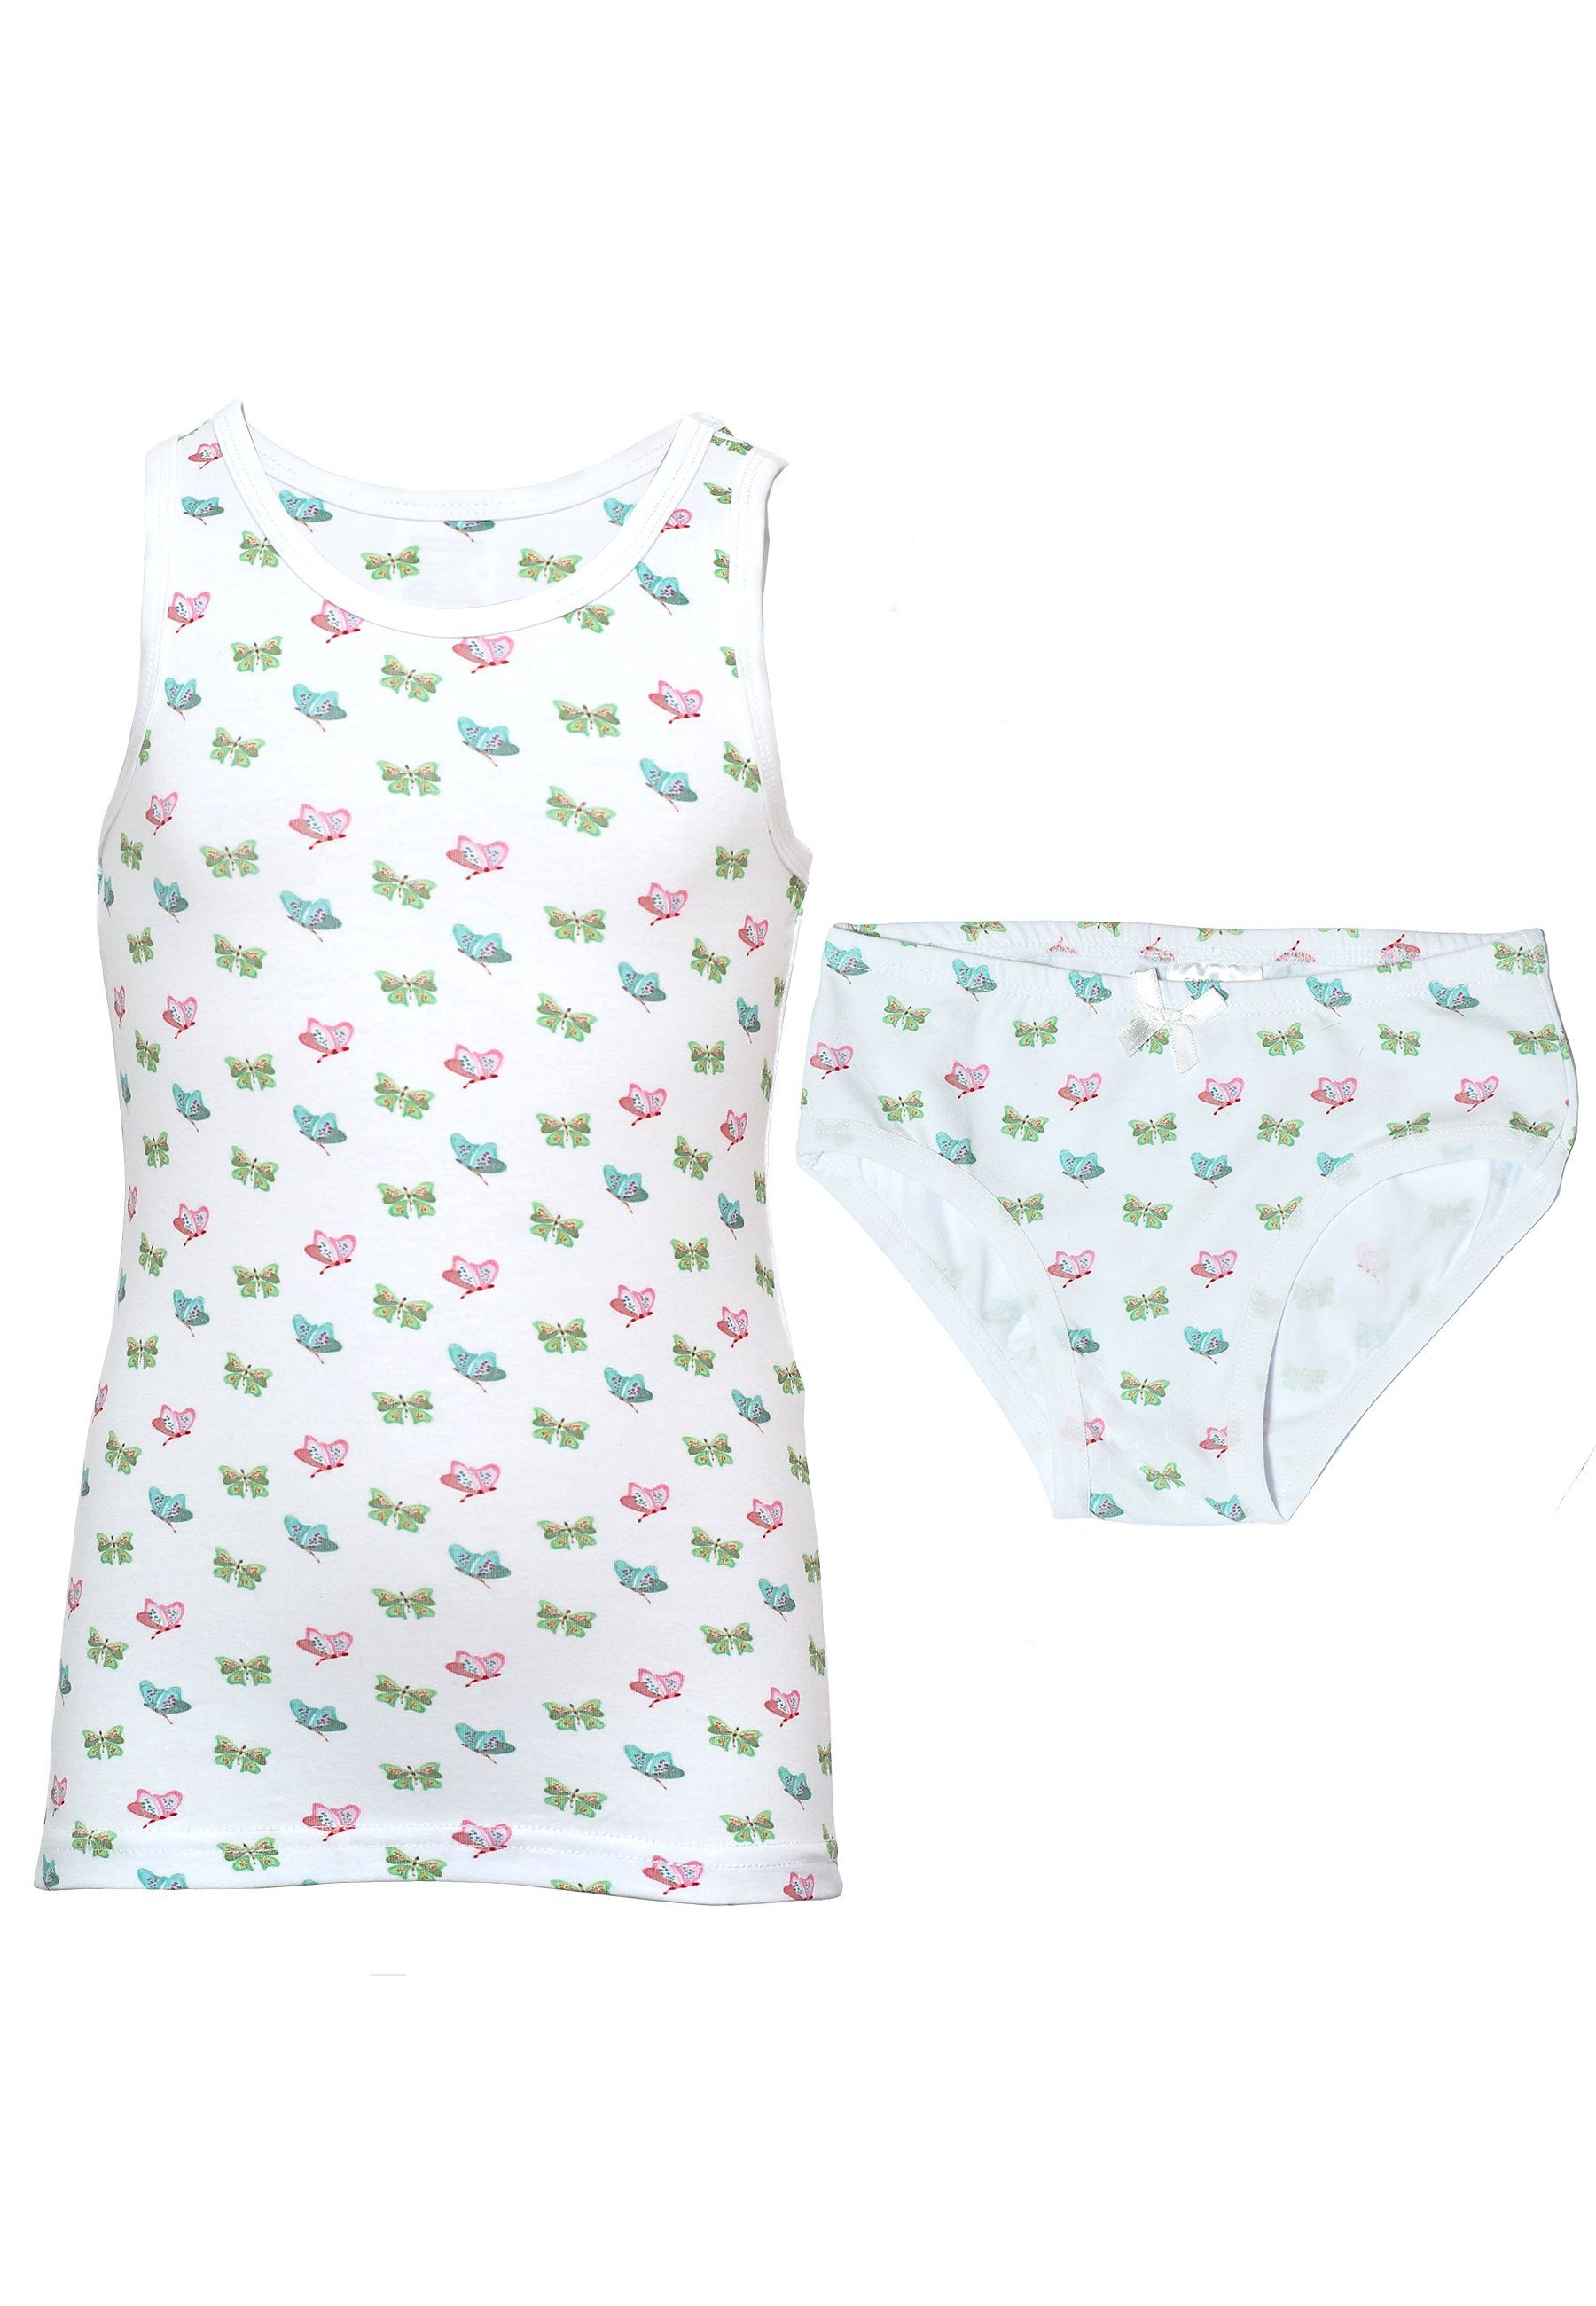 CARBURANT Unterhemd Set Unterwäsche für Mädchen (Set)